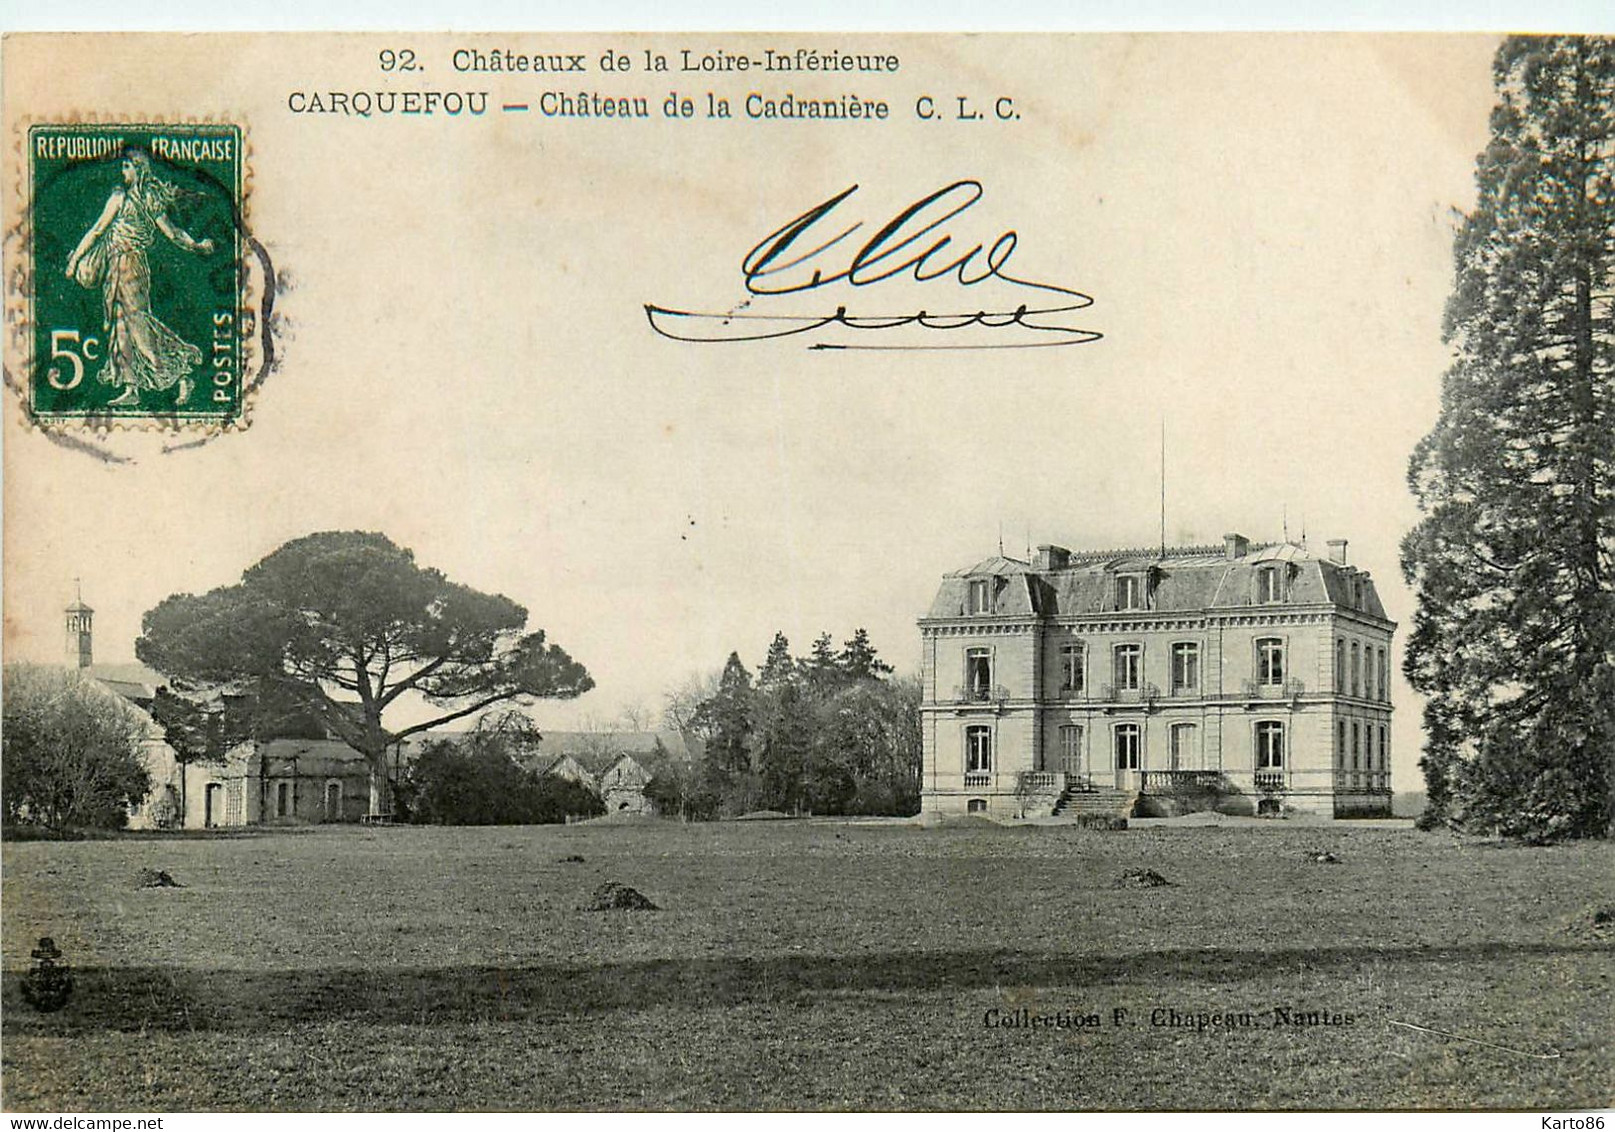 Carquefou * Le Château De La Cadranière * Châteaux De La Loire Inférieure N°92 - Carquefou